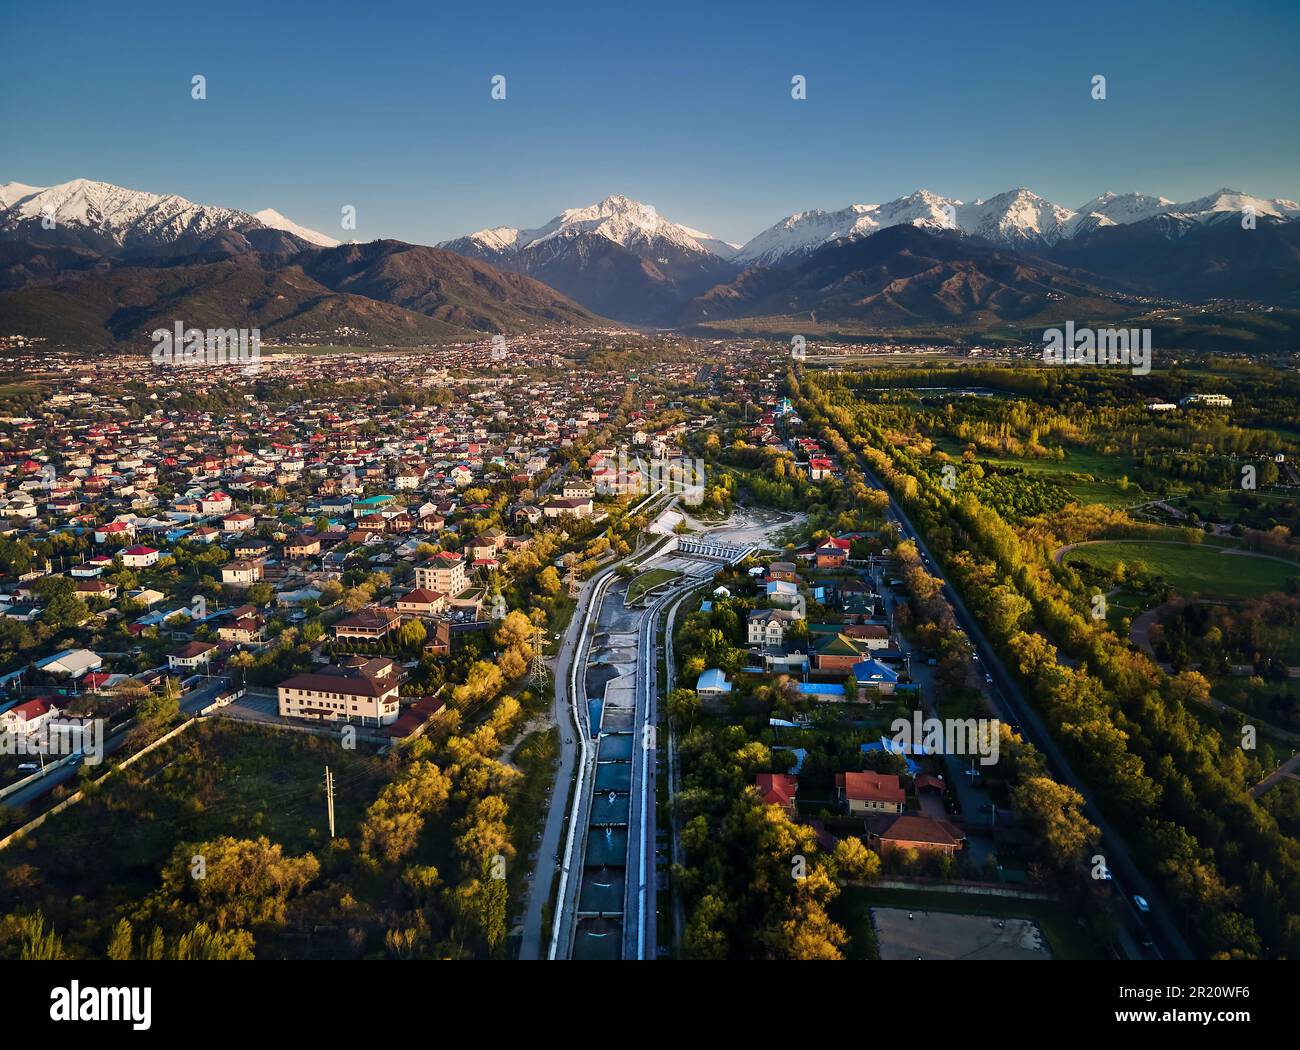 Draufsicht über den großen Fluss Almaty und die Häuser mit der Kulisse der Schneebirge im Hintergrund in der Stadt Almaty, Kasachstan Stockfoto